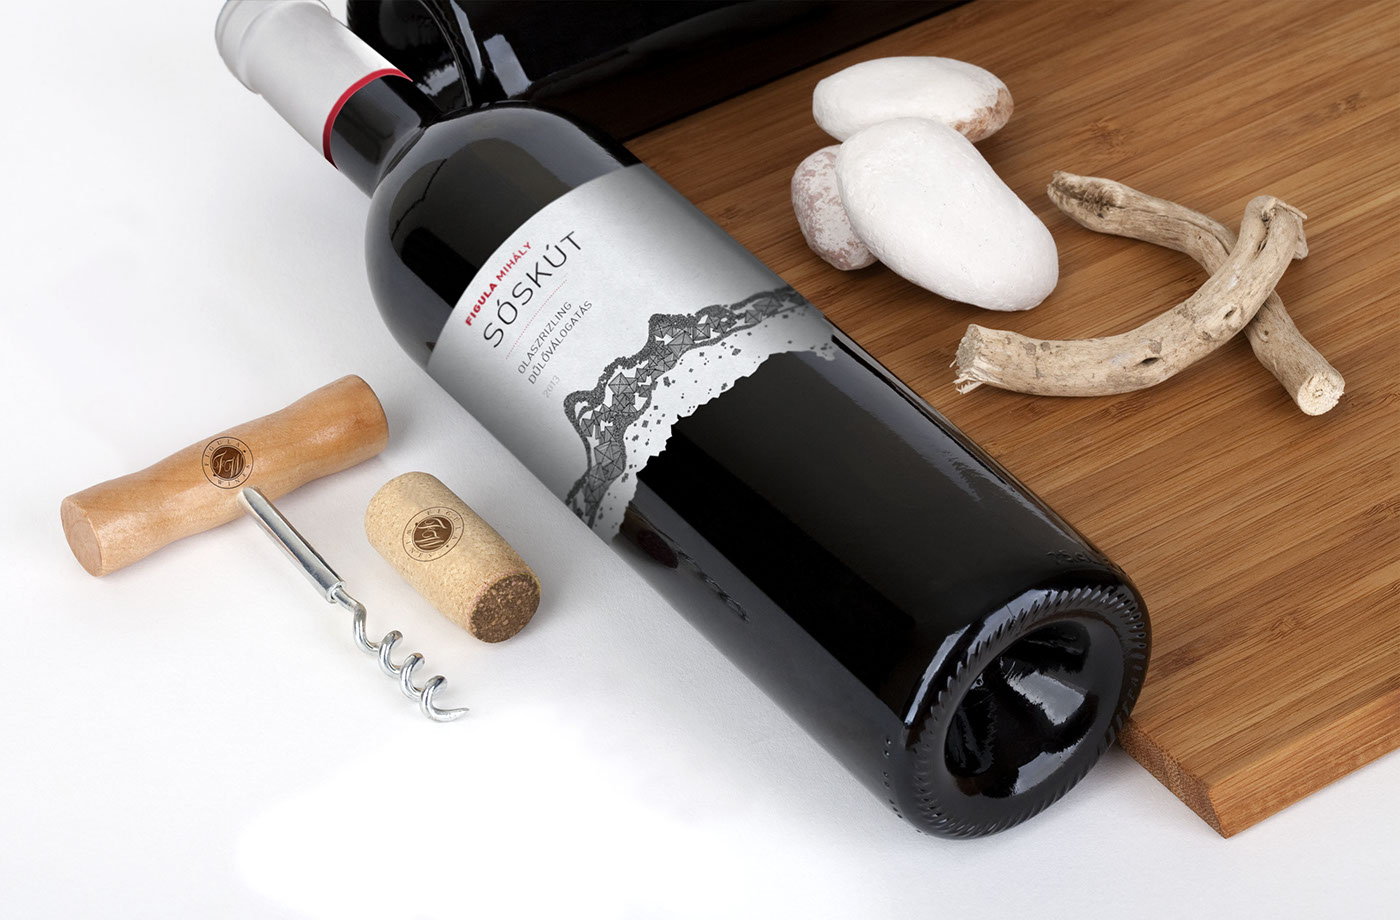 Cégér sóskút figula Figula Mihaly dűlőválogatás wine wine label package wine package borcímke Label